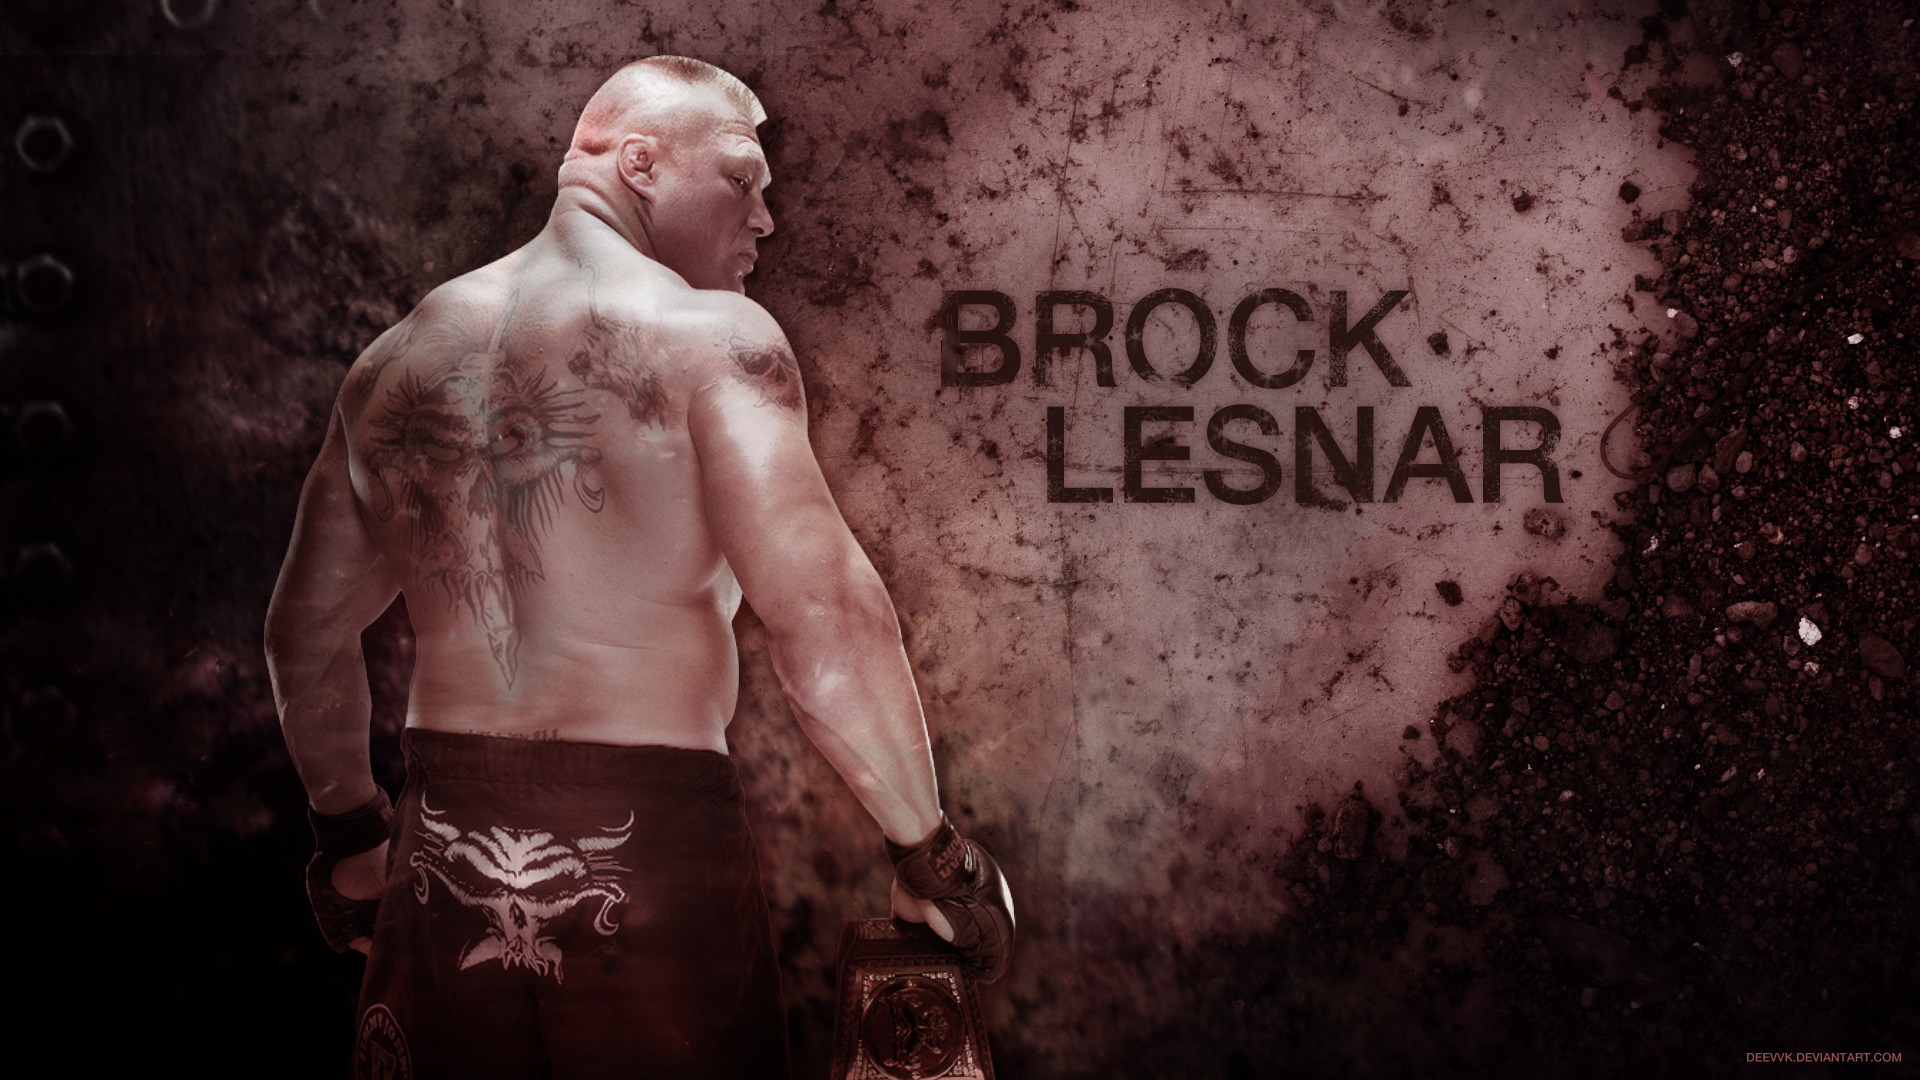 Brock Lesnar Wallpaper: Top Free Brock Lesnar Background, Picture & Image Download